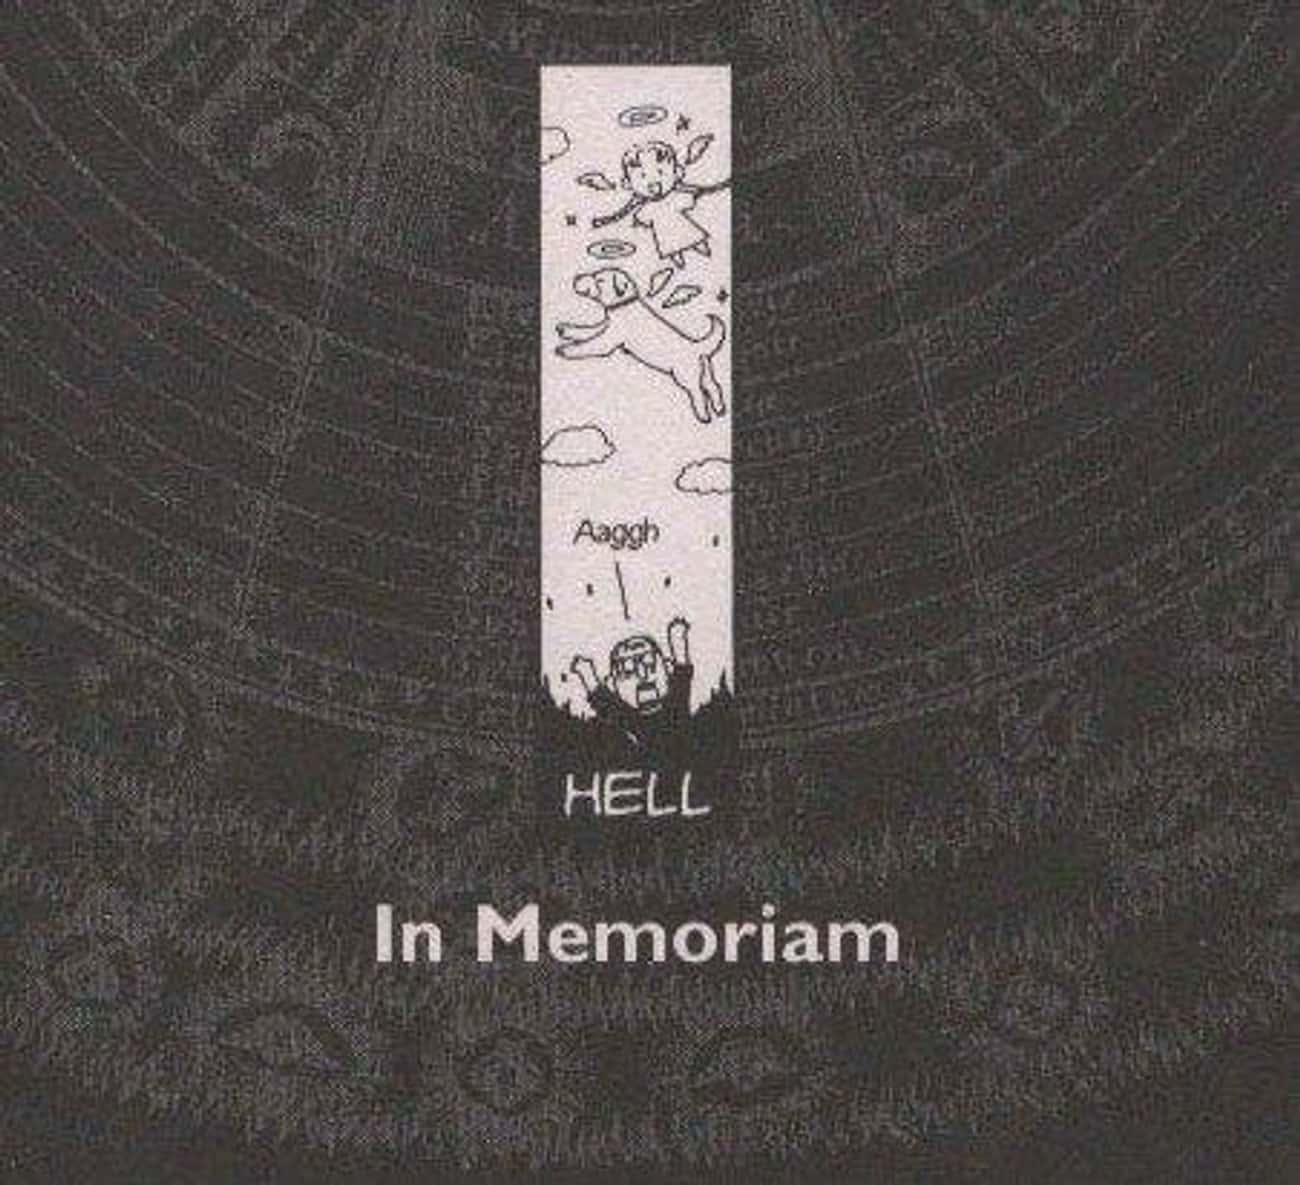 The Original Manga Has A Memorial Section